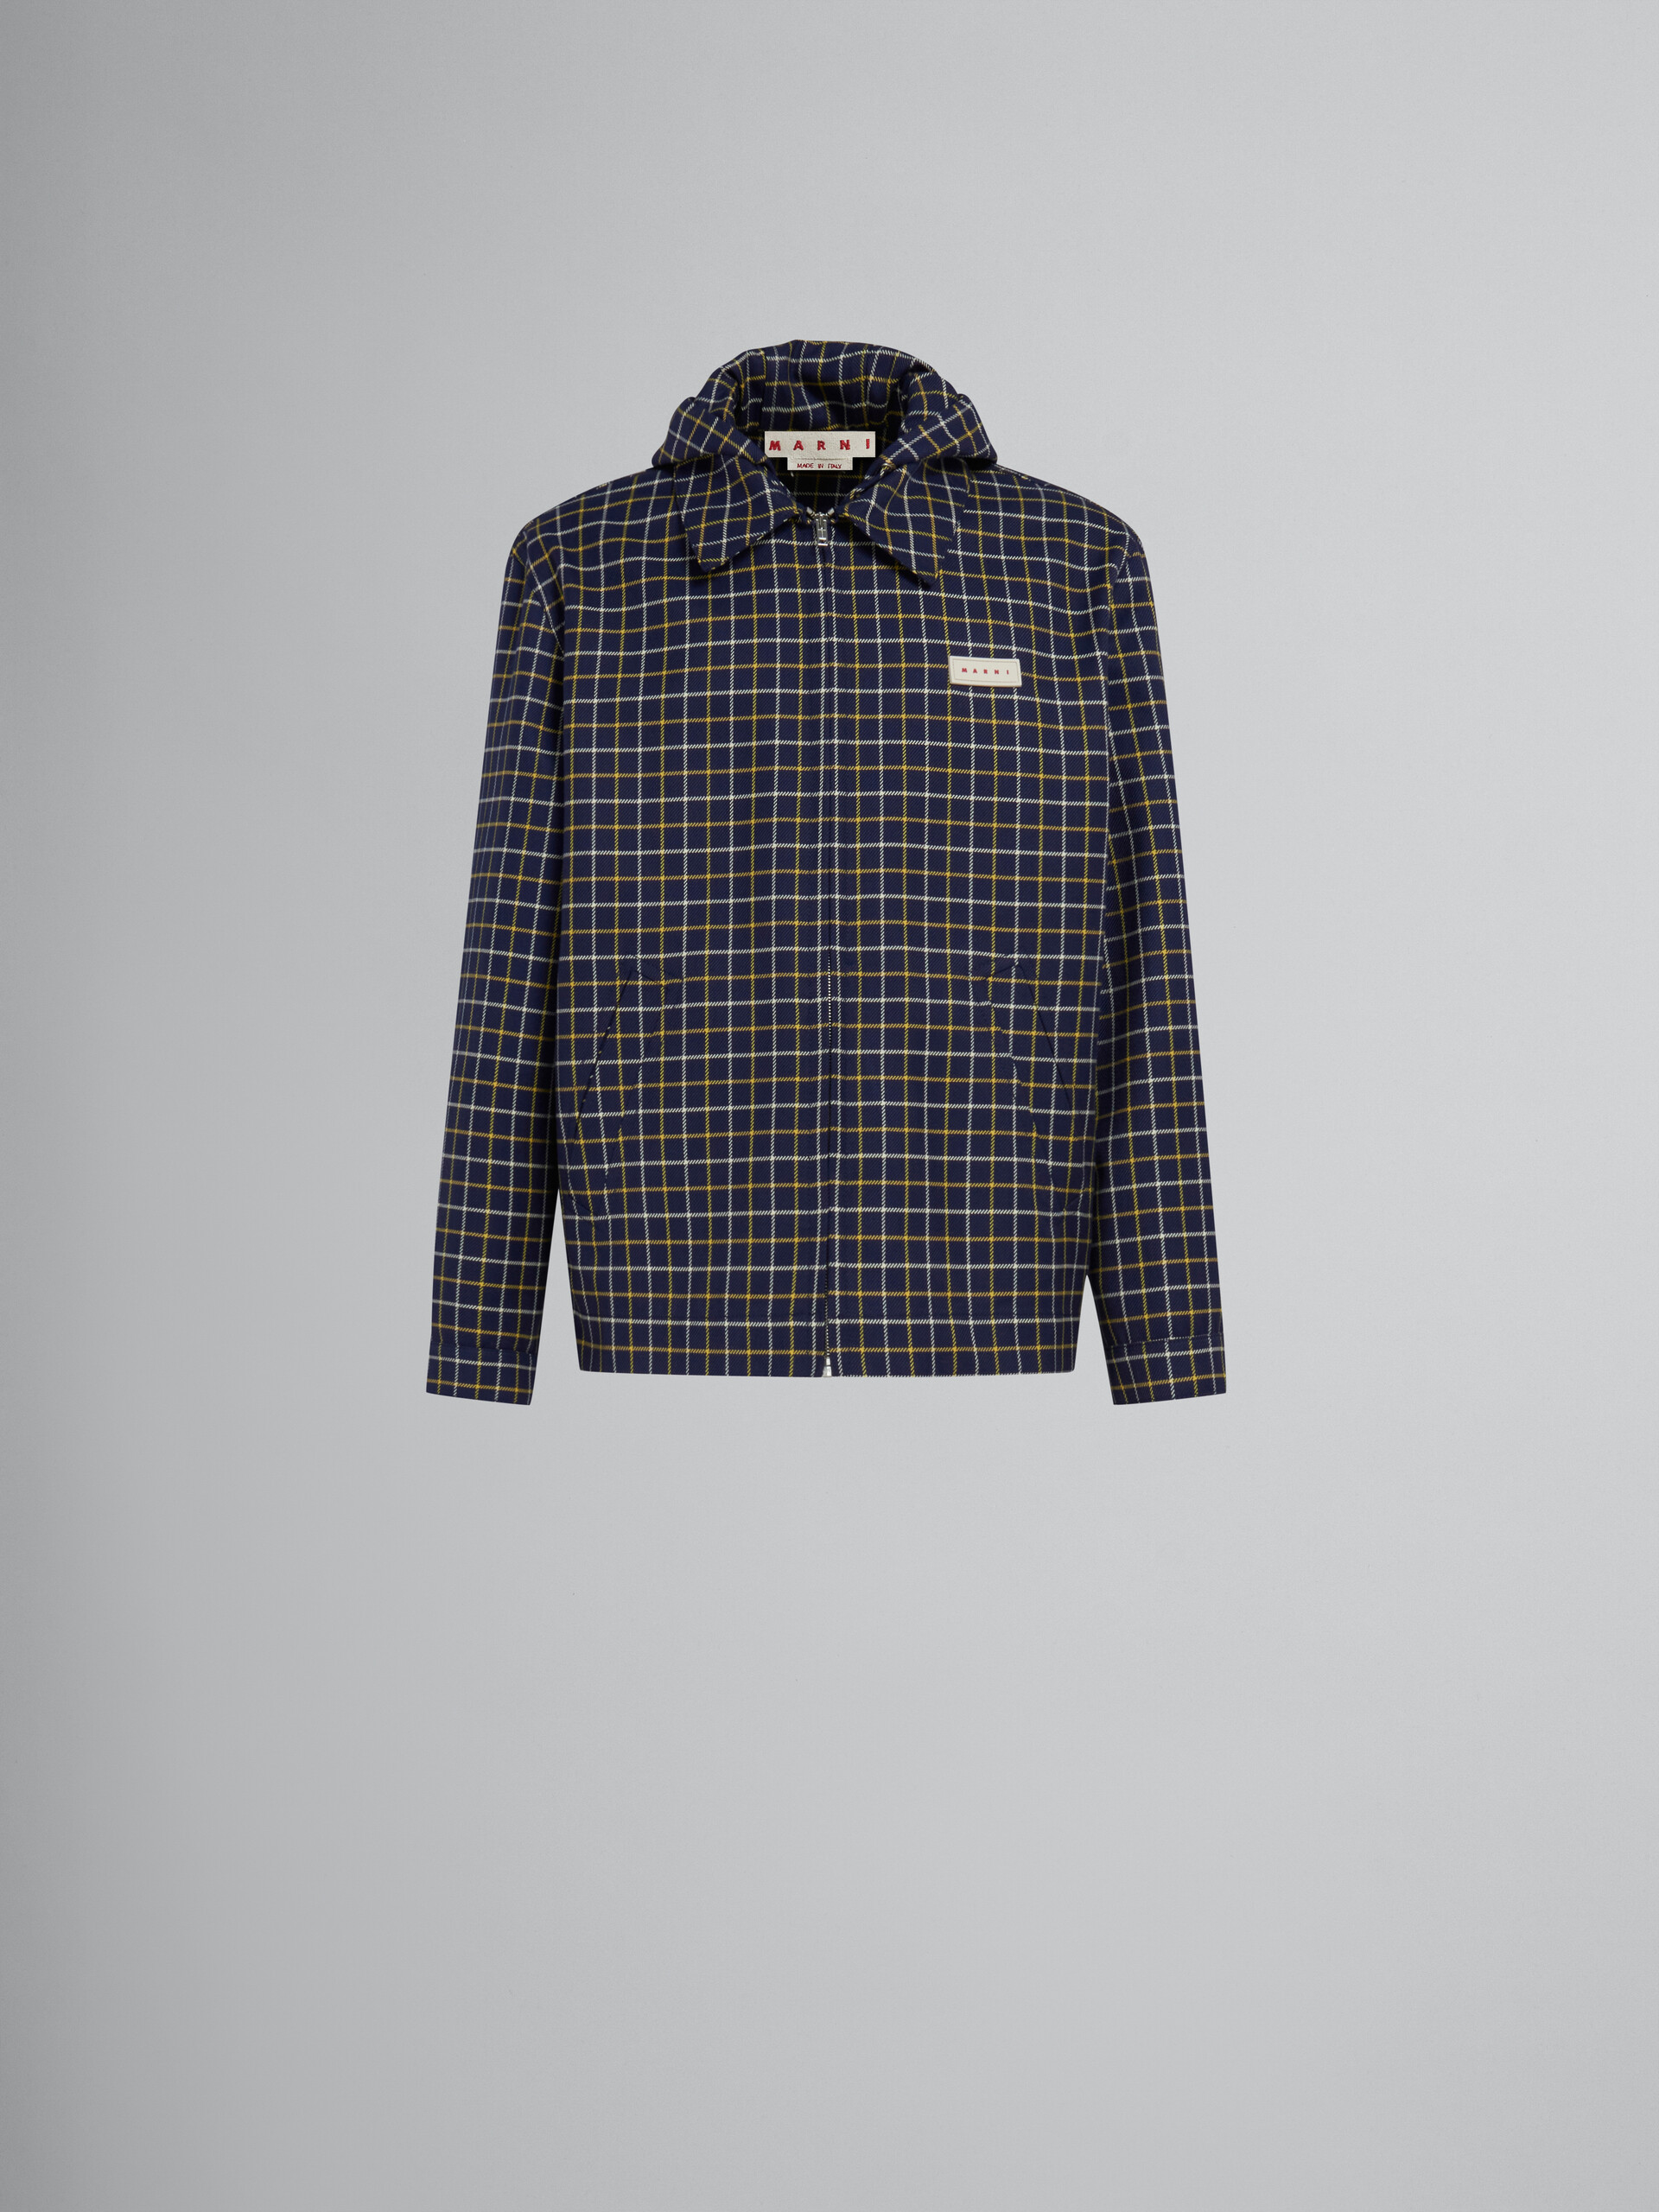 ブルー チェック ウールとコットン製 オーバーシャツ - ジャケット - Image 1